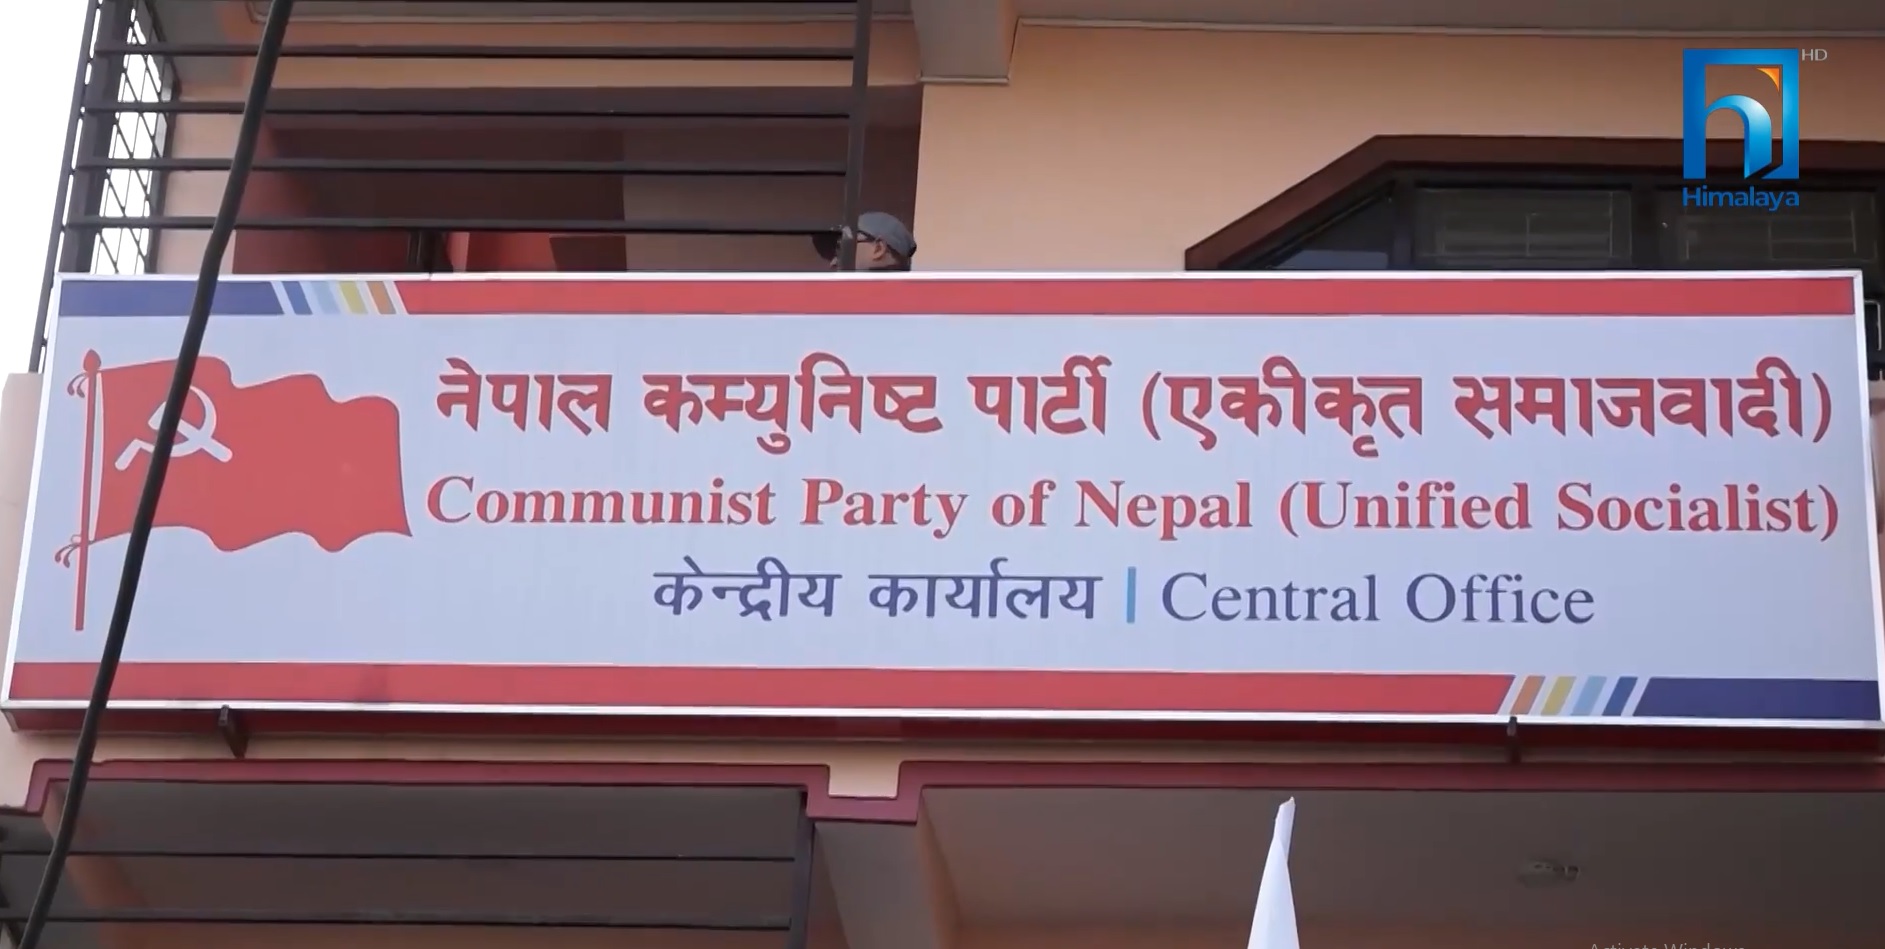 सिपी मैनाली र माधव नेपाल उस्तै ! (भिडियो रिपोर्टसहित)